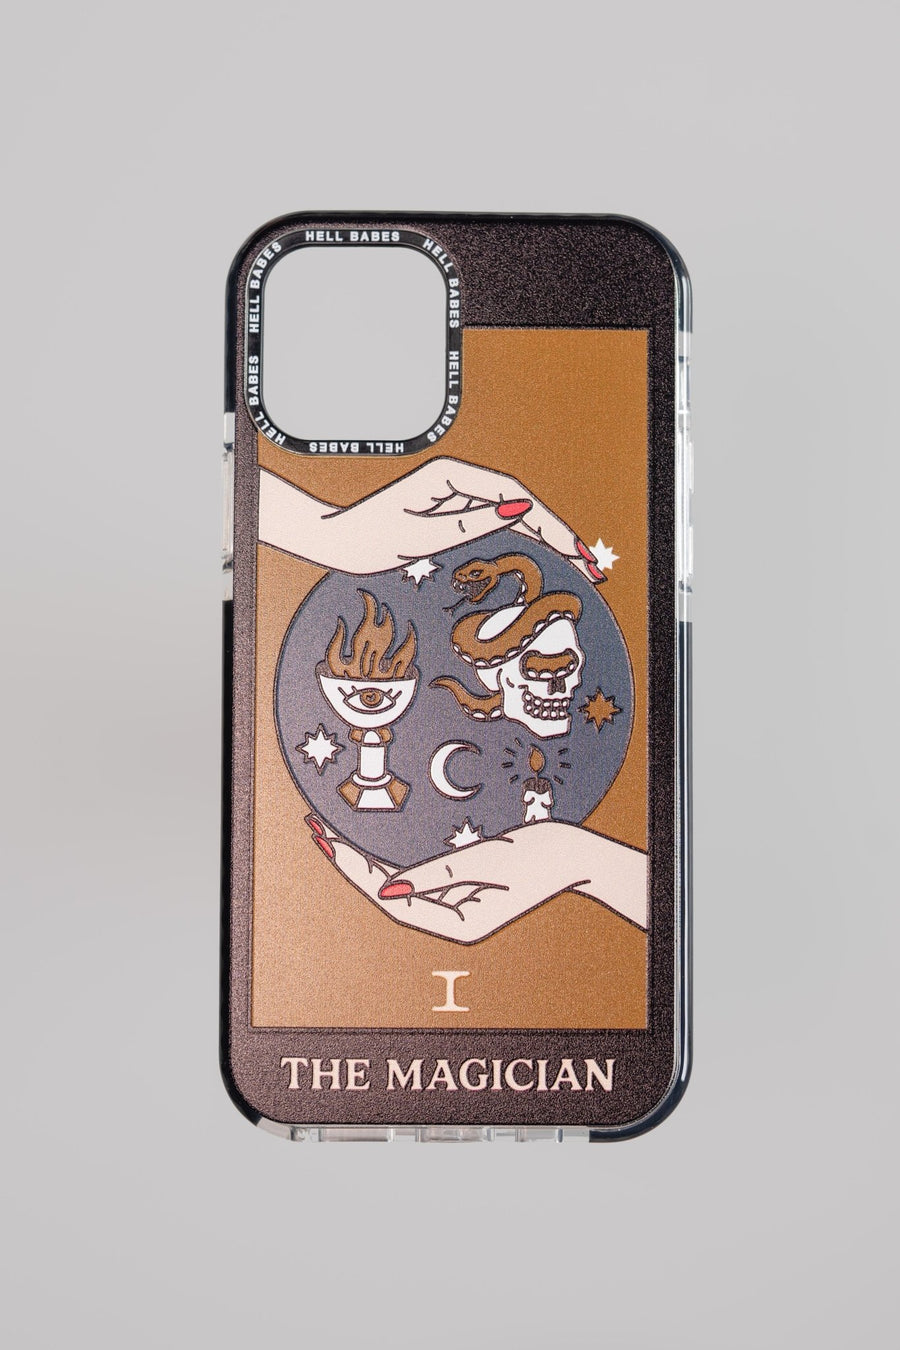 Magician (I) Tarot Card Phone Case